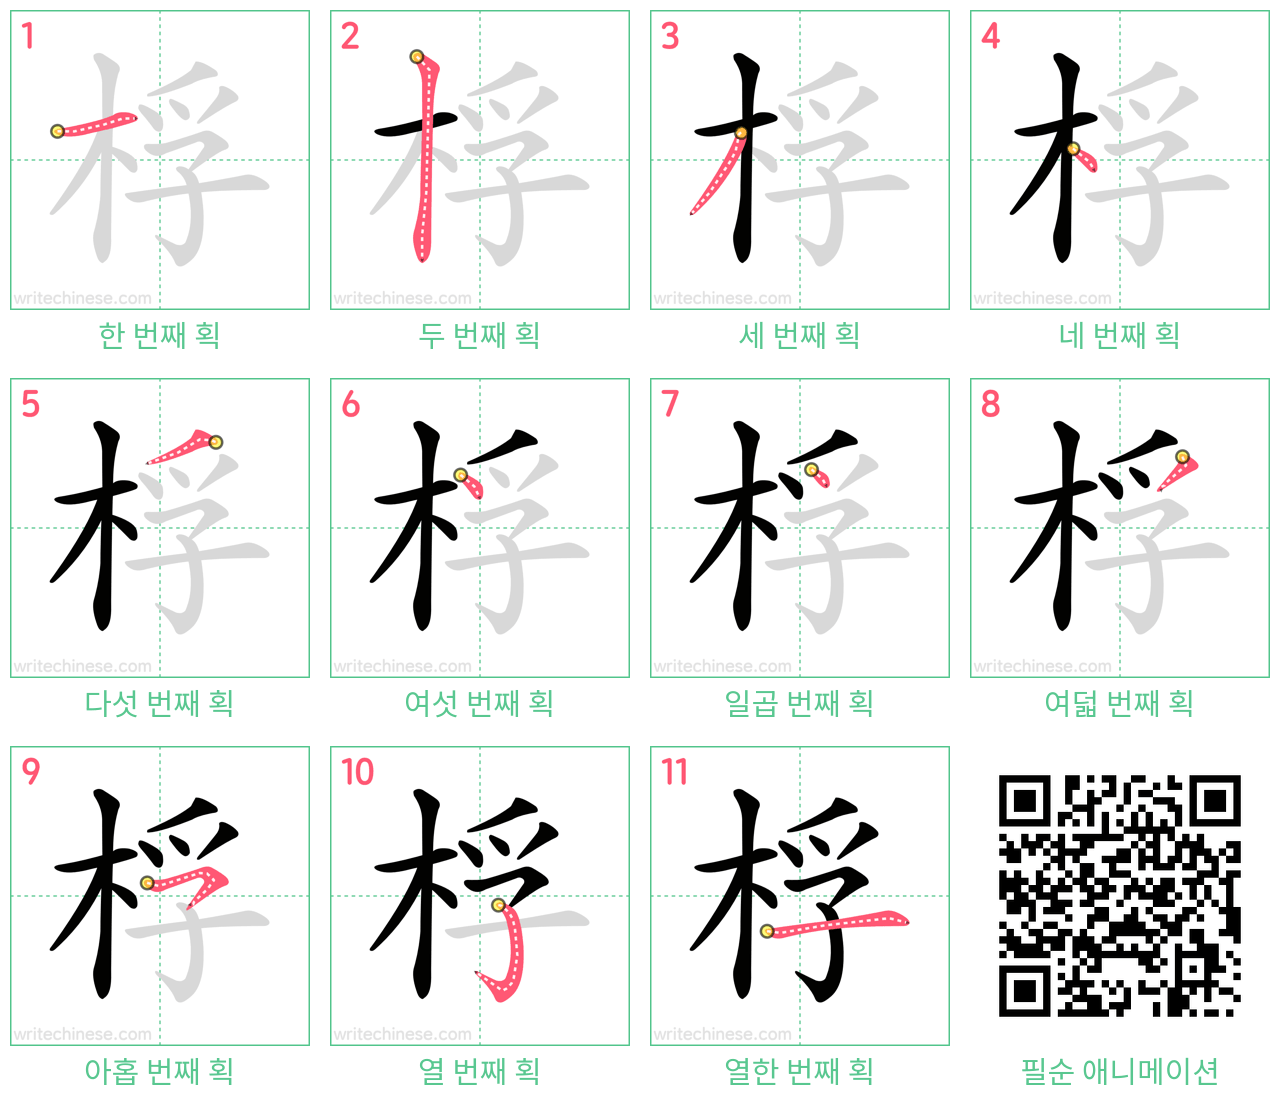 桴 step-by-step stroke order diagrams